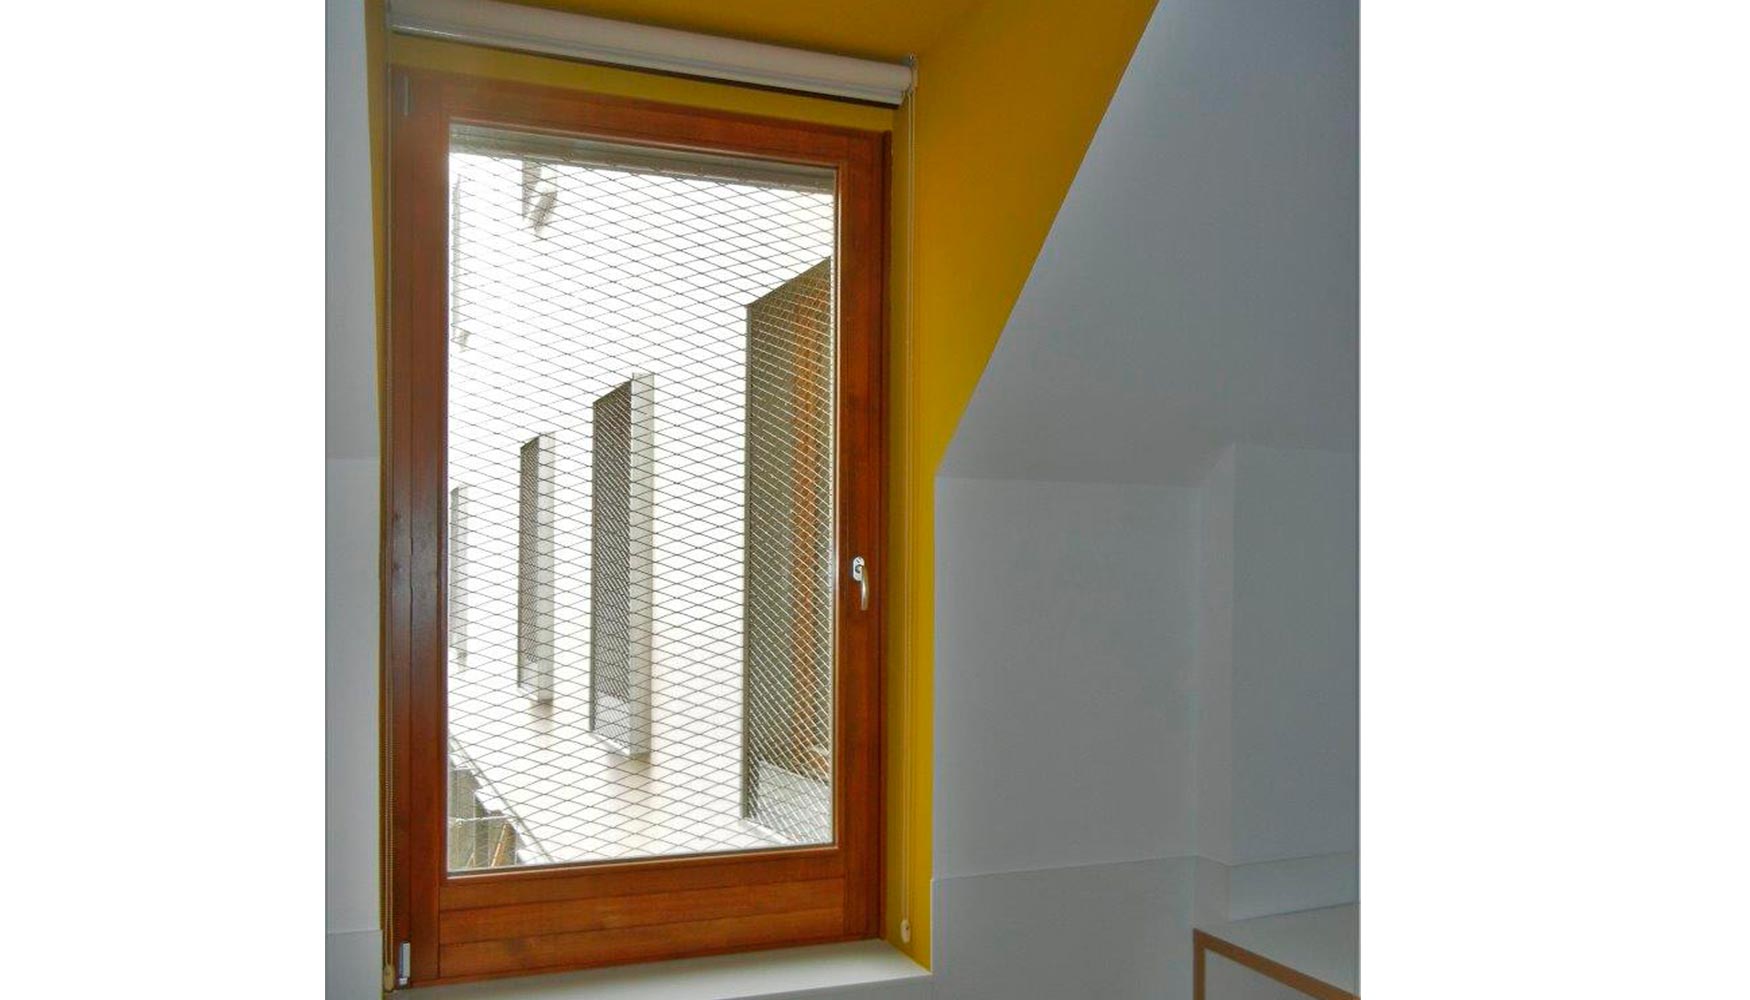 Gracias a todos los elementos empleados y al uso de materiales biosostenibles, como las ventanas de madera de Carinbisa...